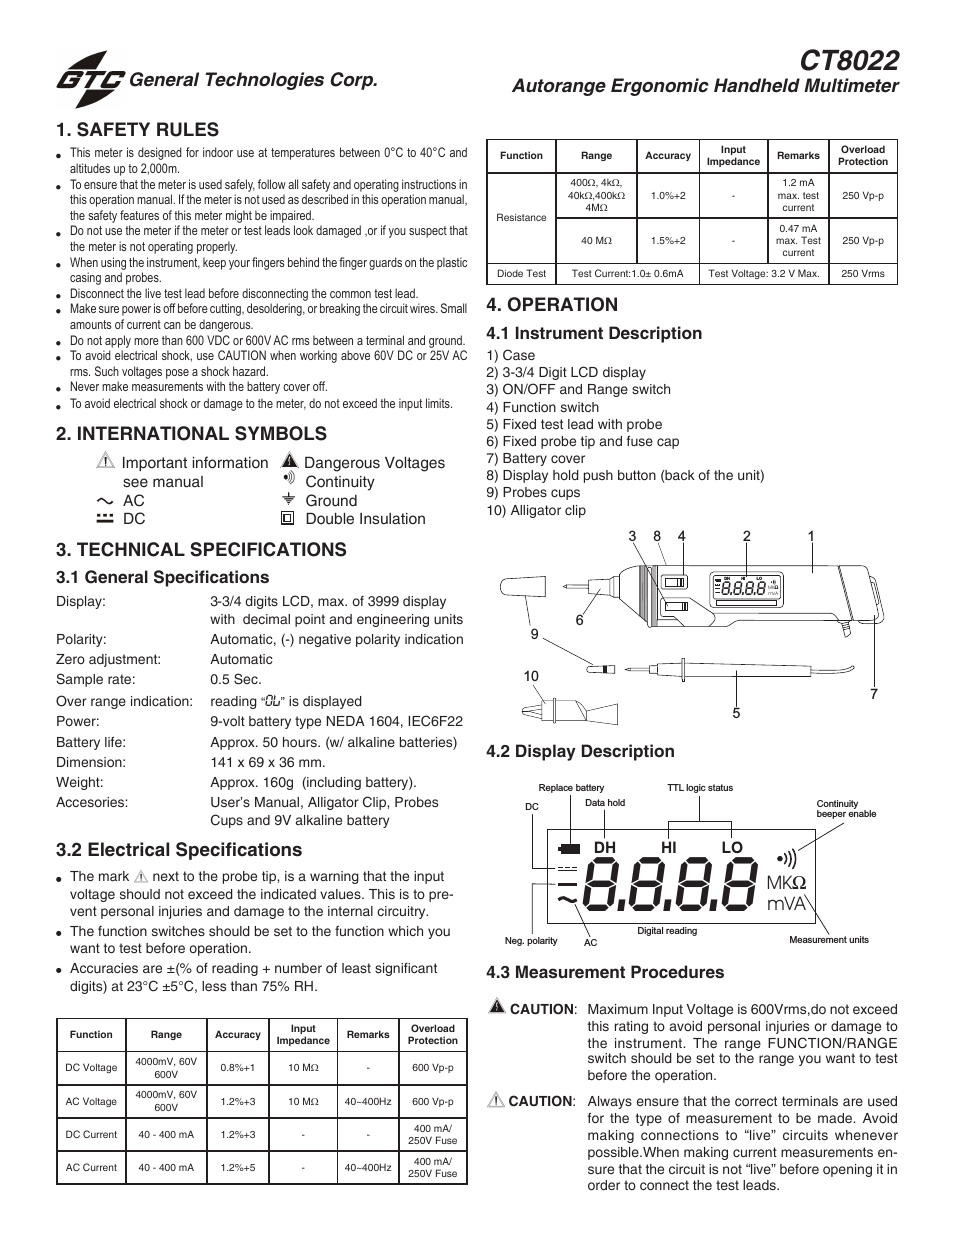 CT8022 Ergonomic Autorange Digital Multimeter